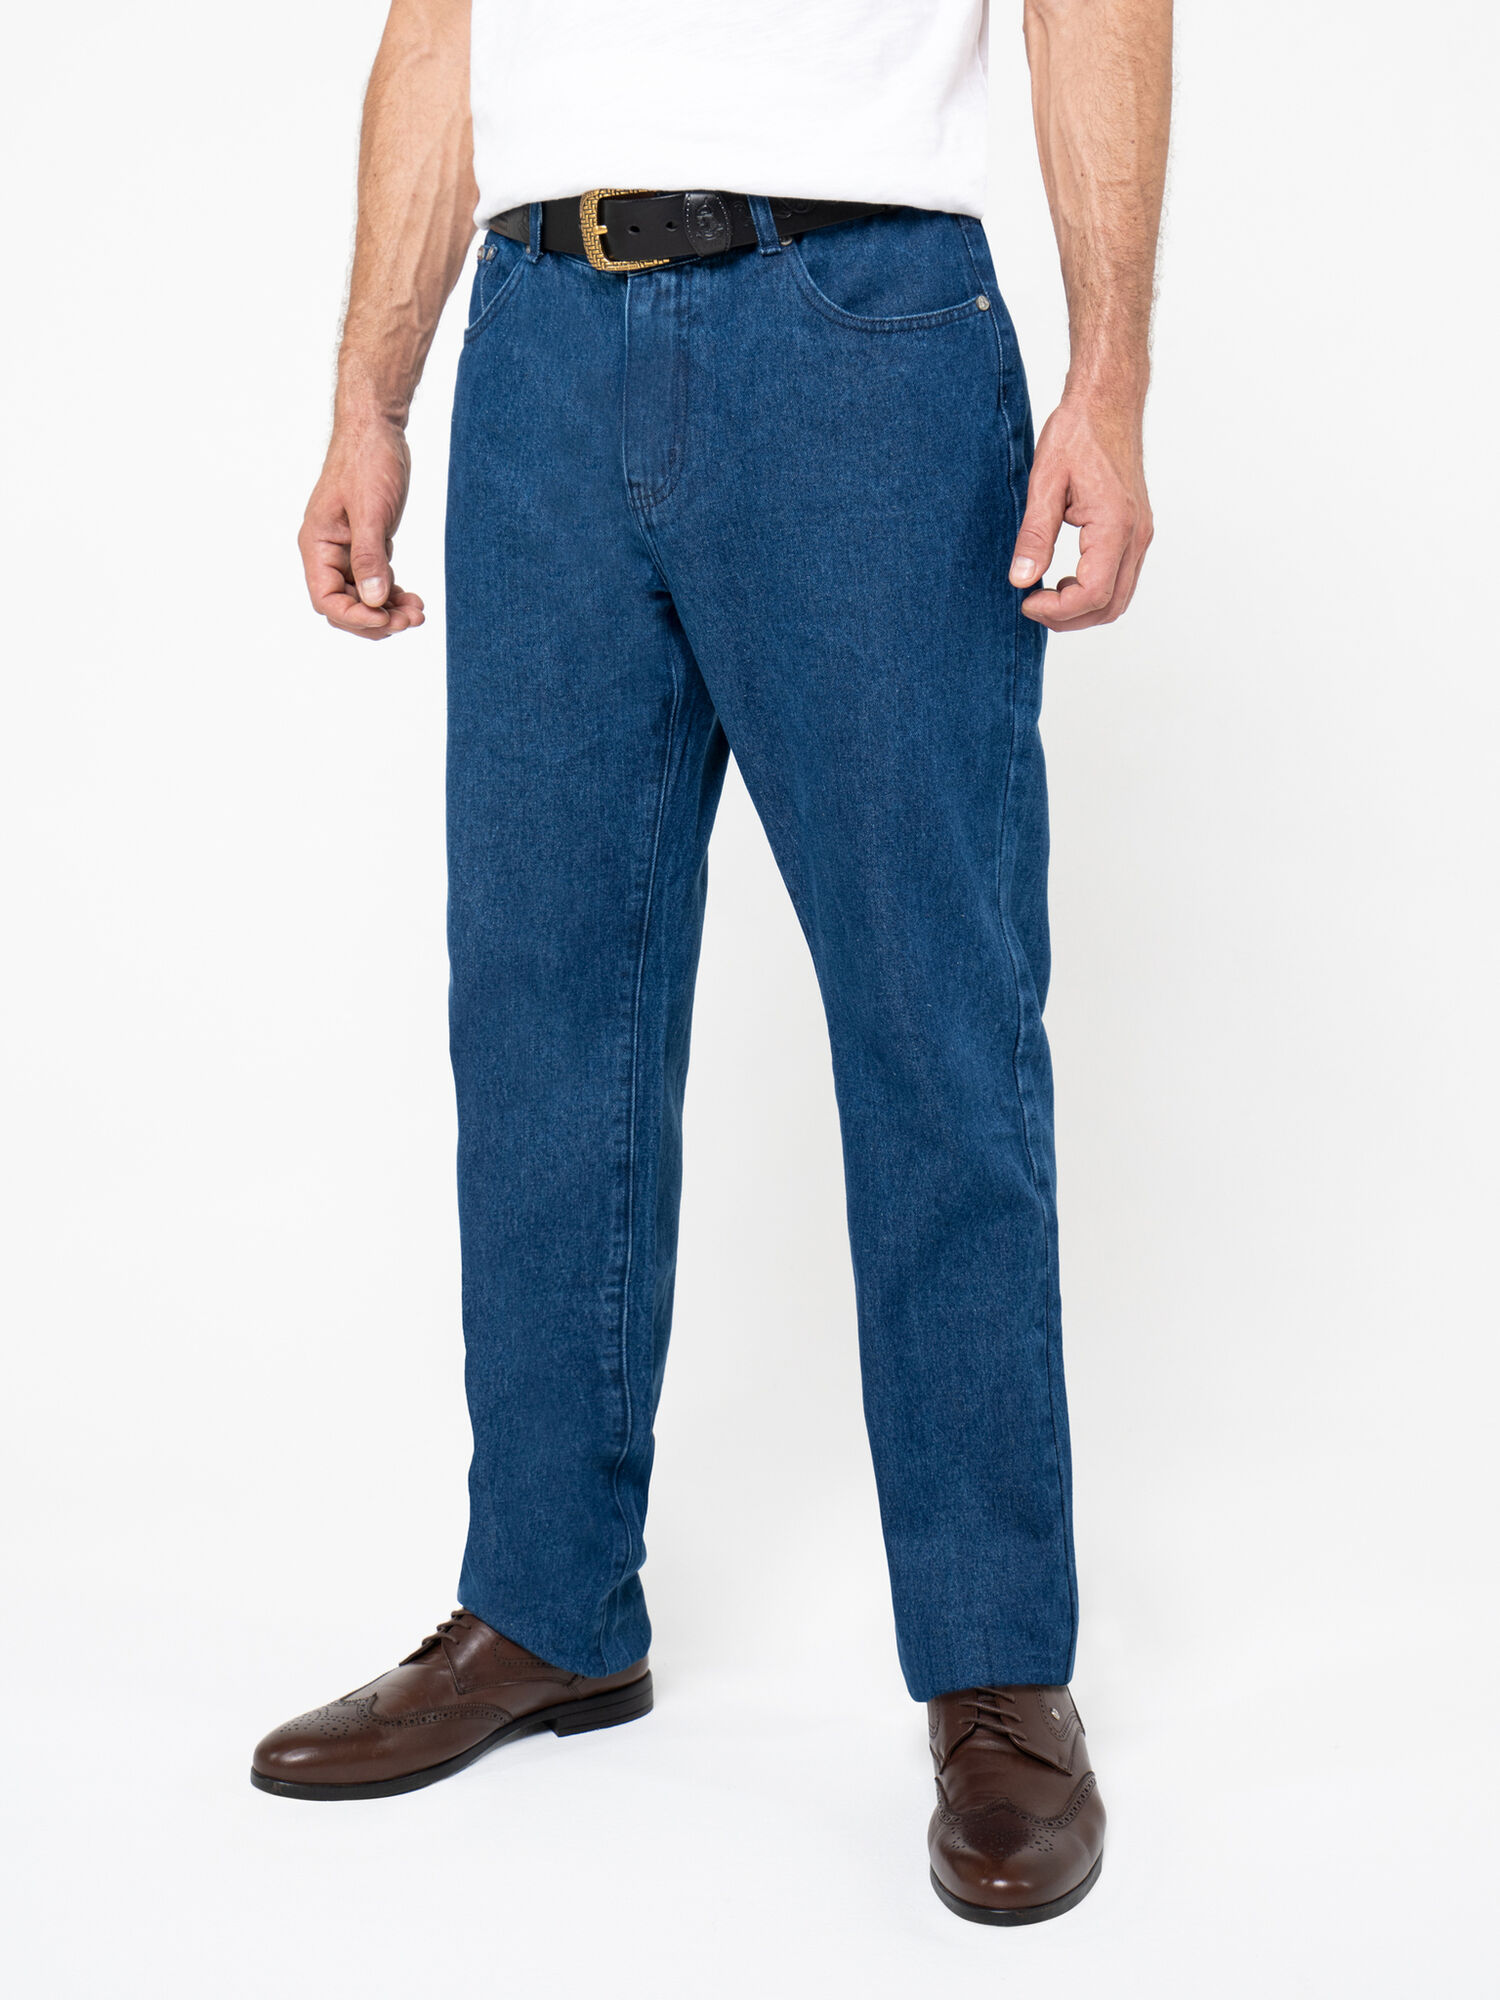 Плотные джинсы цвета синего индиго из премиального хлопка